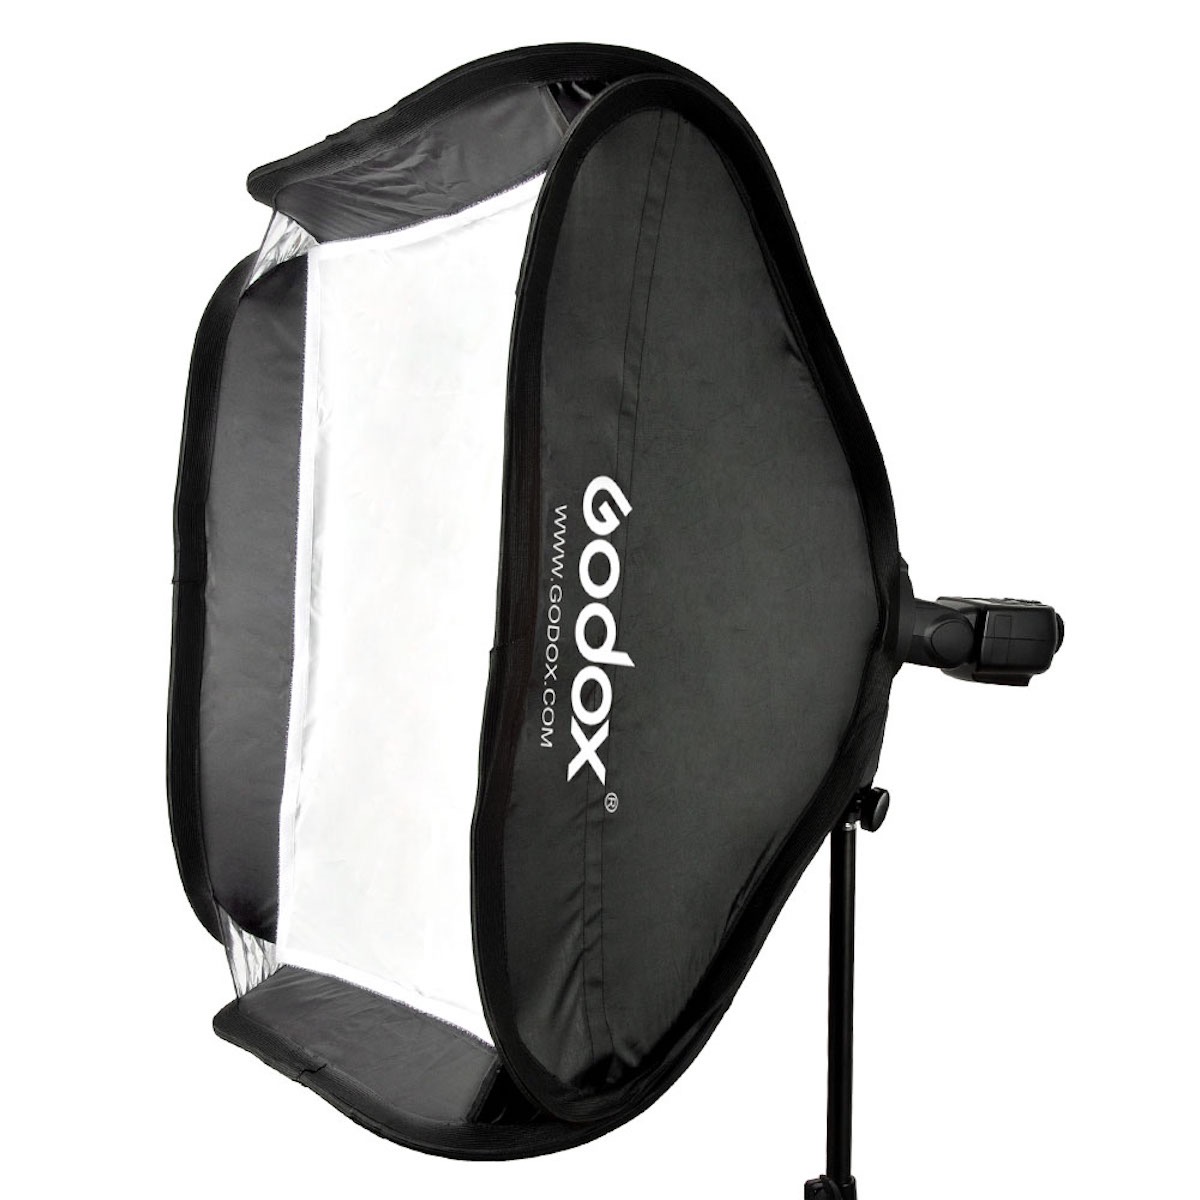 Godox S-Halterung Elinchrom Rotolux + Softbox 40x40cm + Gitter